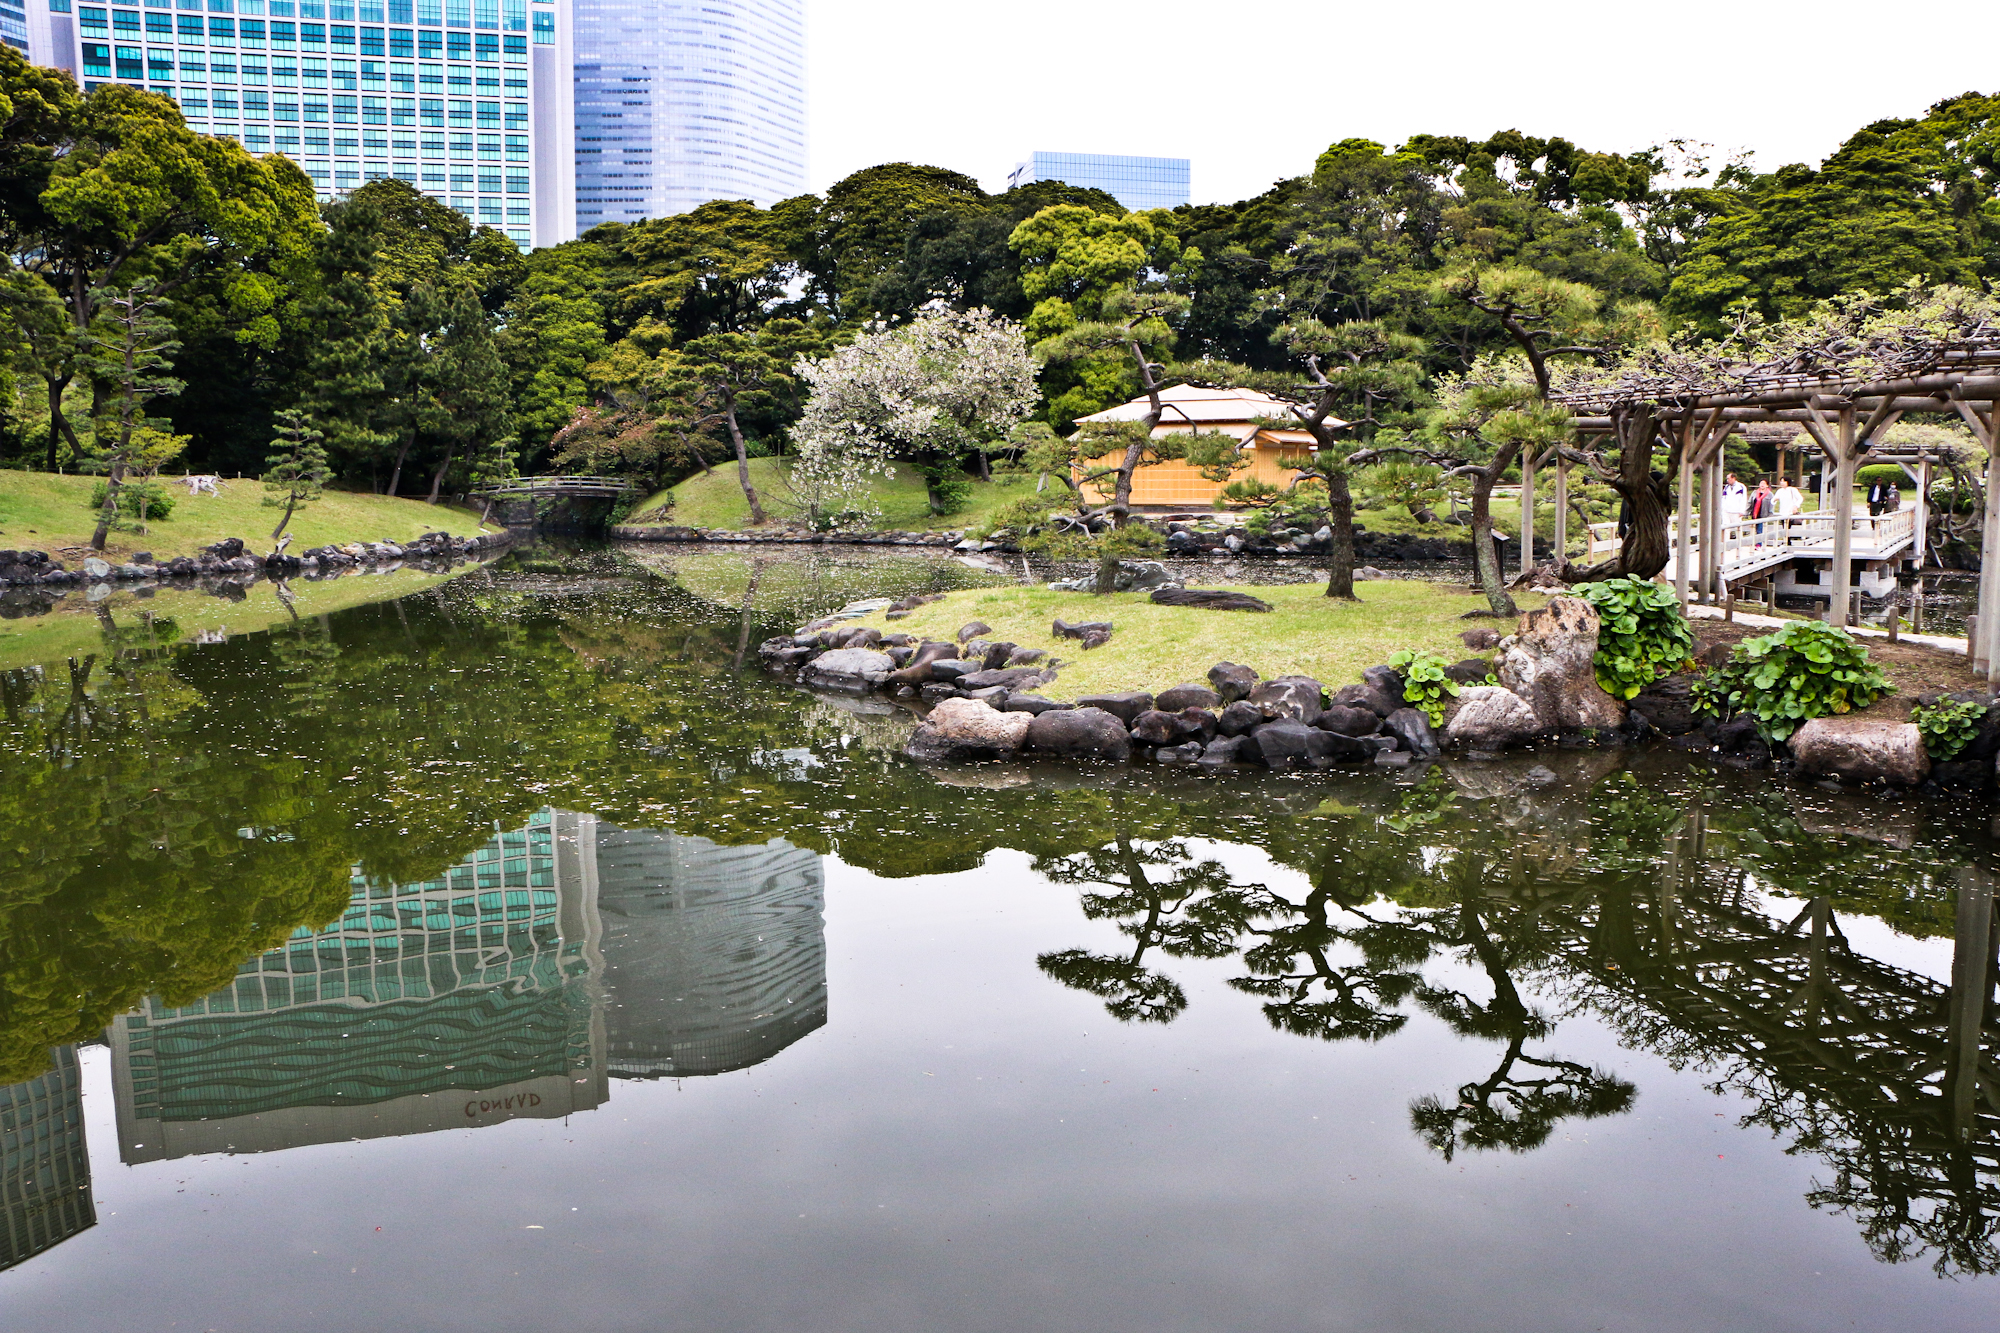 Hama-rikyu Gardens/Shimbashi, Tokyo